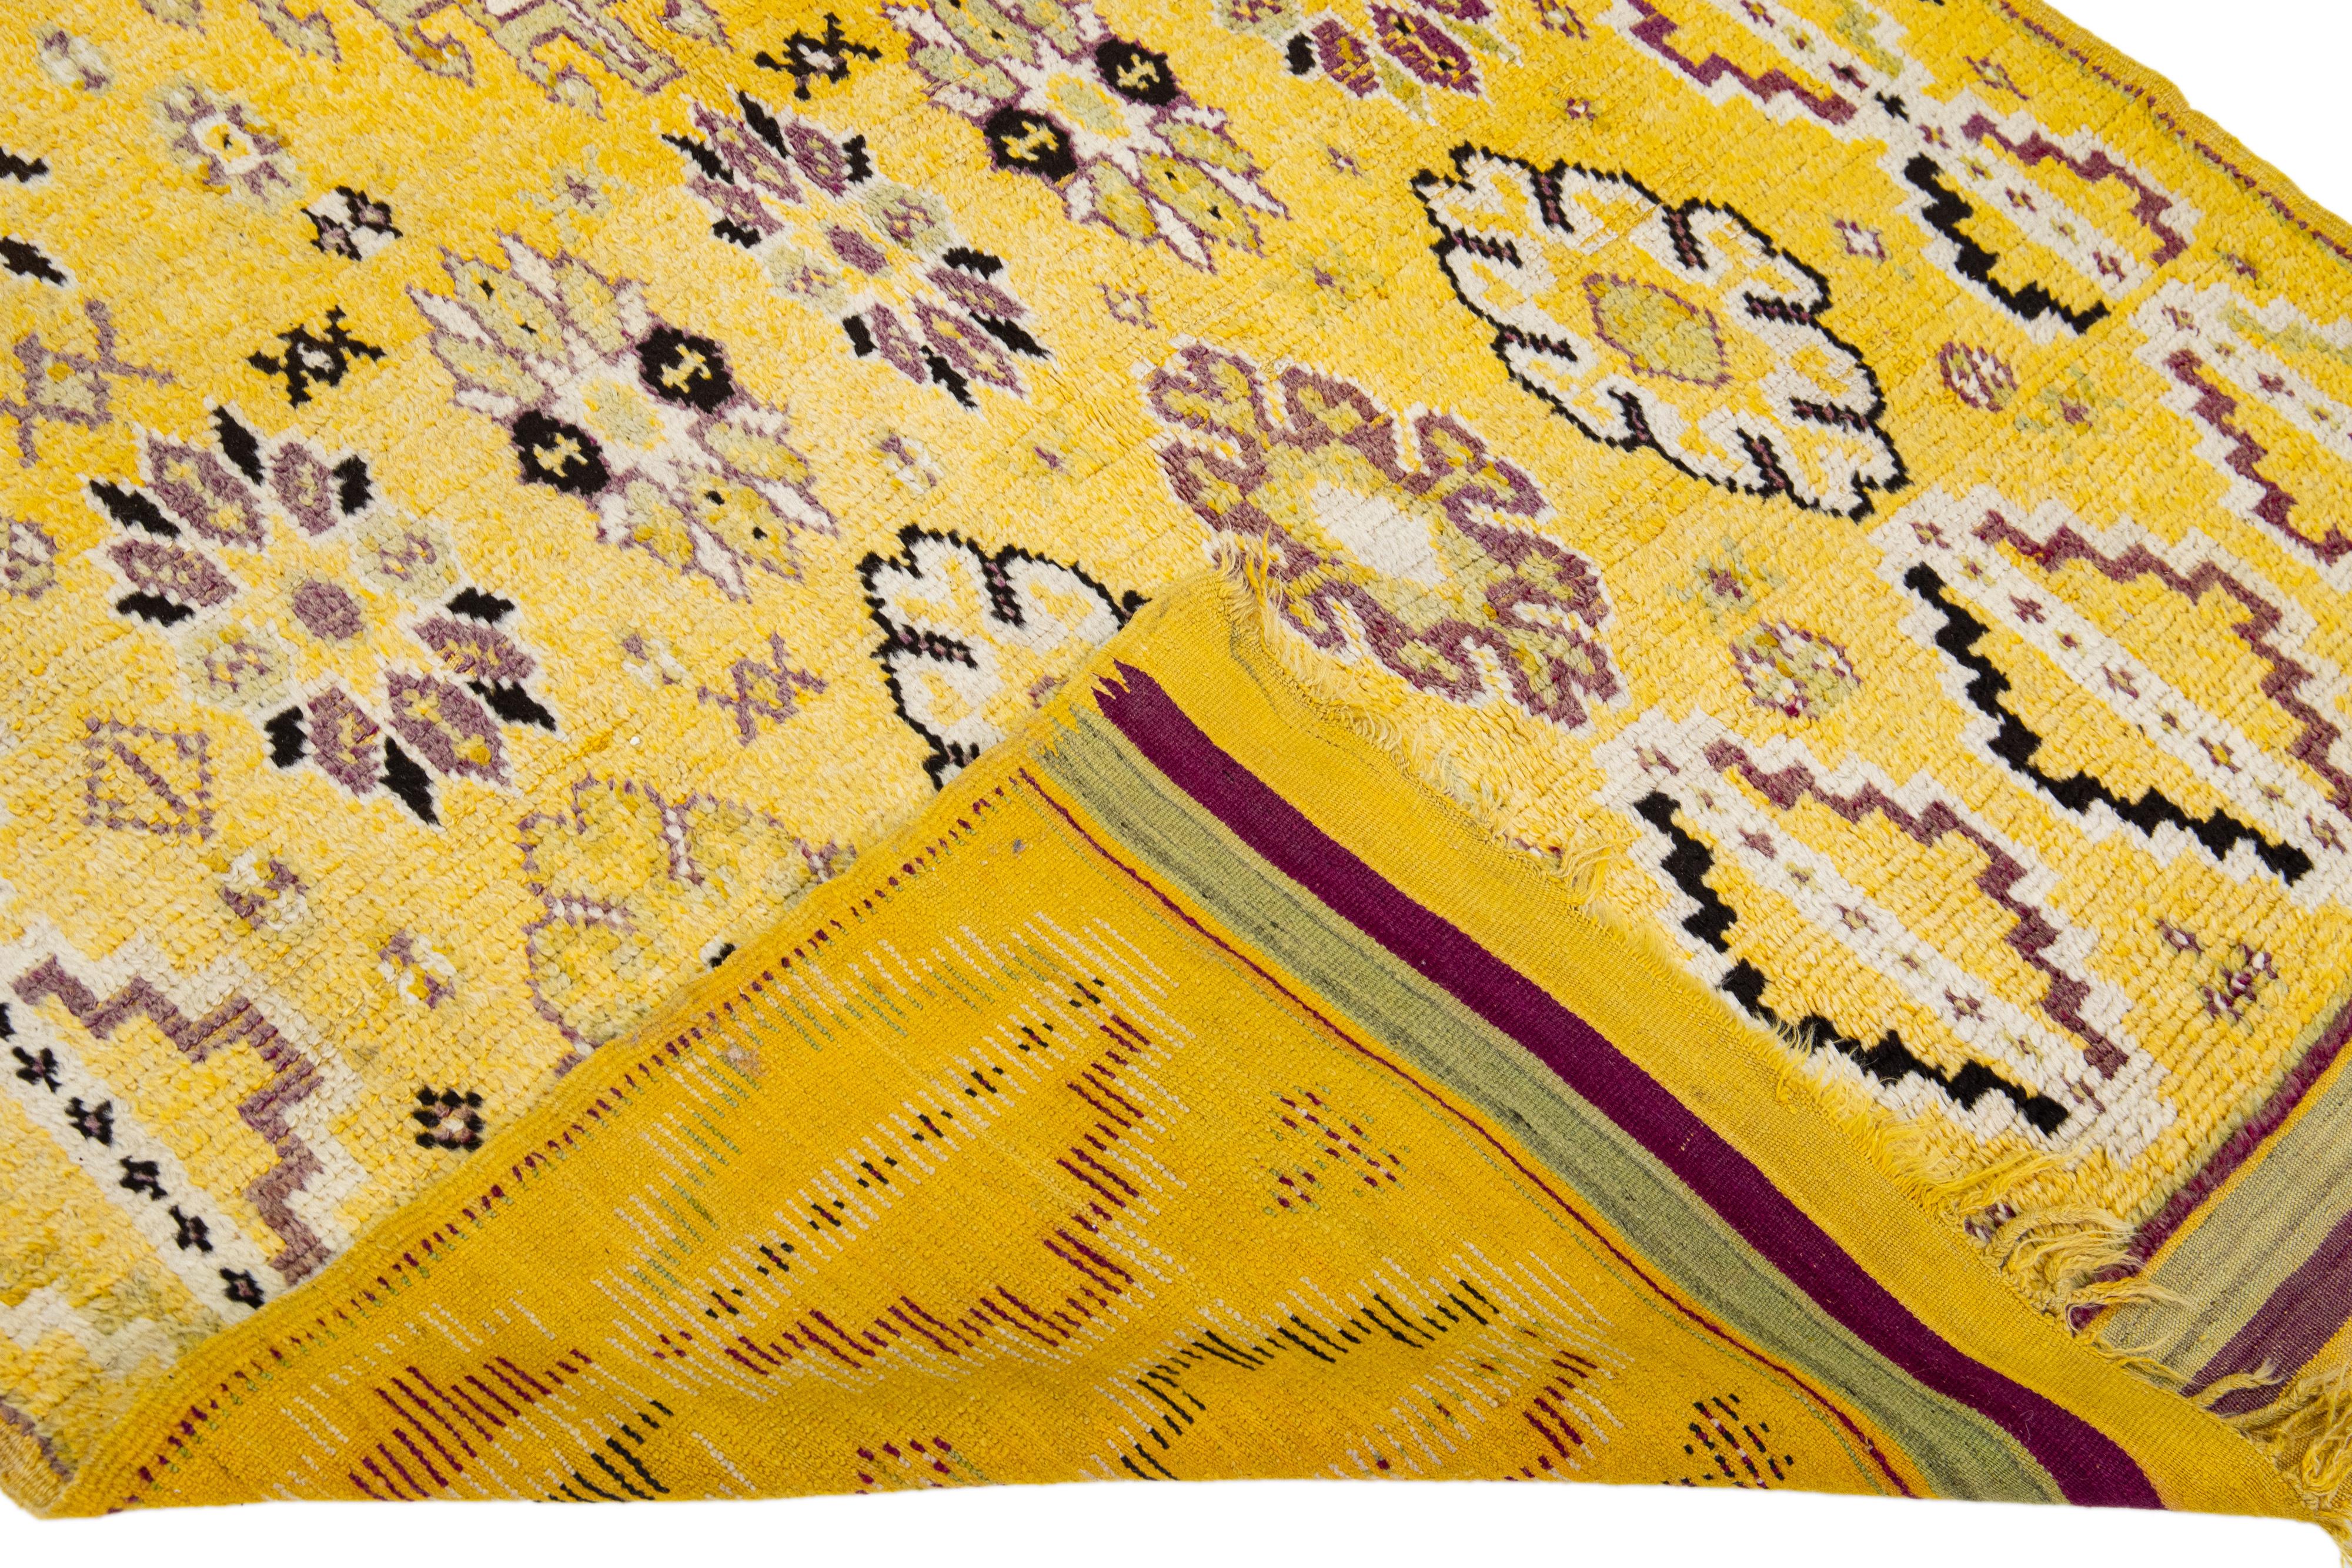 Schöner handgefertigter Wollteppich im marokkanischen Vintage-Stil mit einem gelben Feld und mehrfarbigen Akzenten, die ein wunderschönes geometrisches Muster aufweisen.

Dieser Teppich misst: 5' x 12'.

Unsere Teppiche werden vor dem Versand